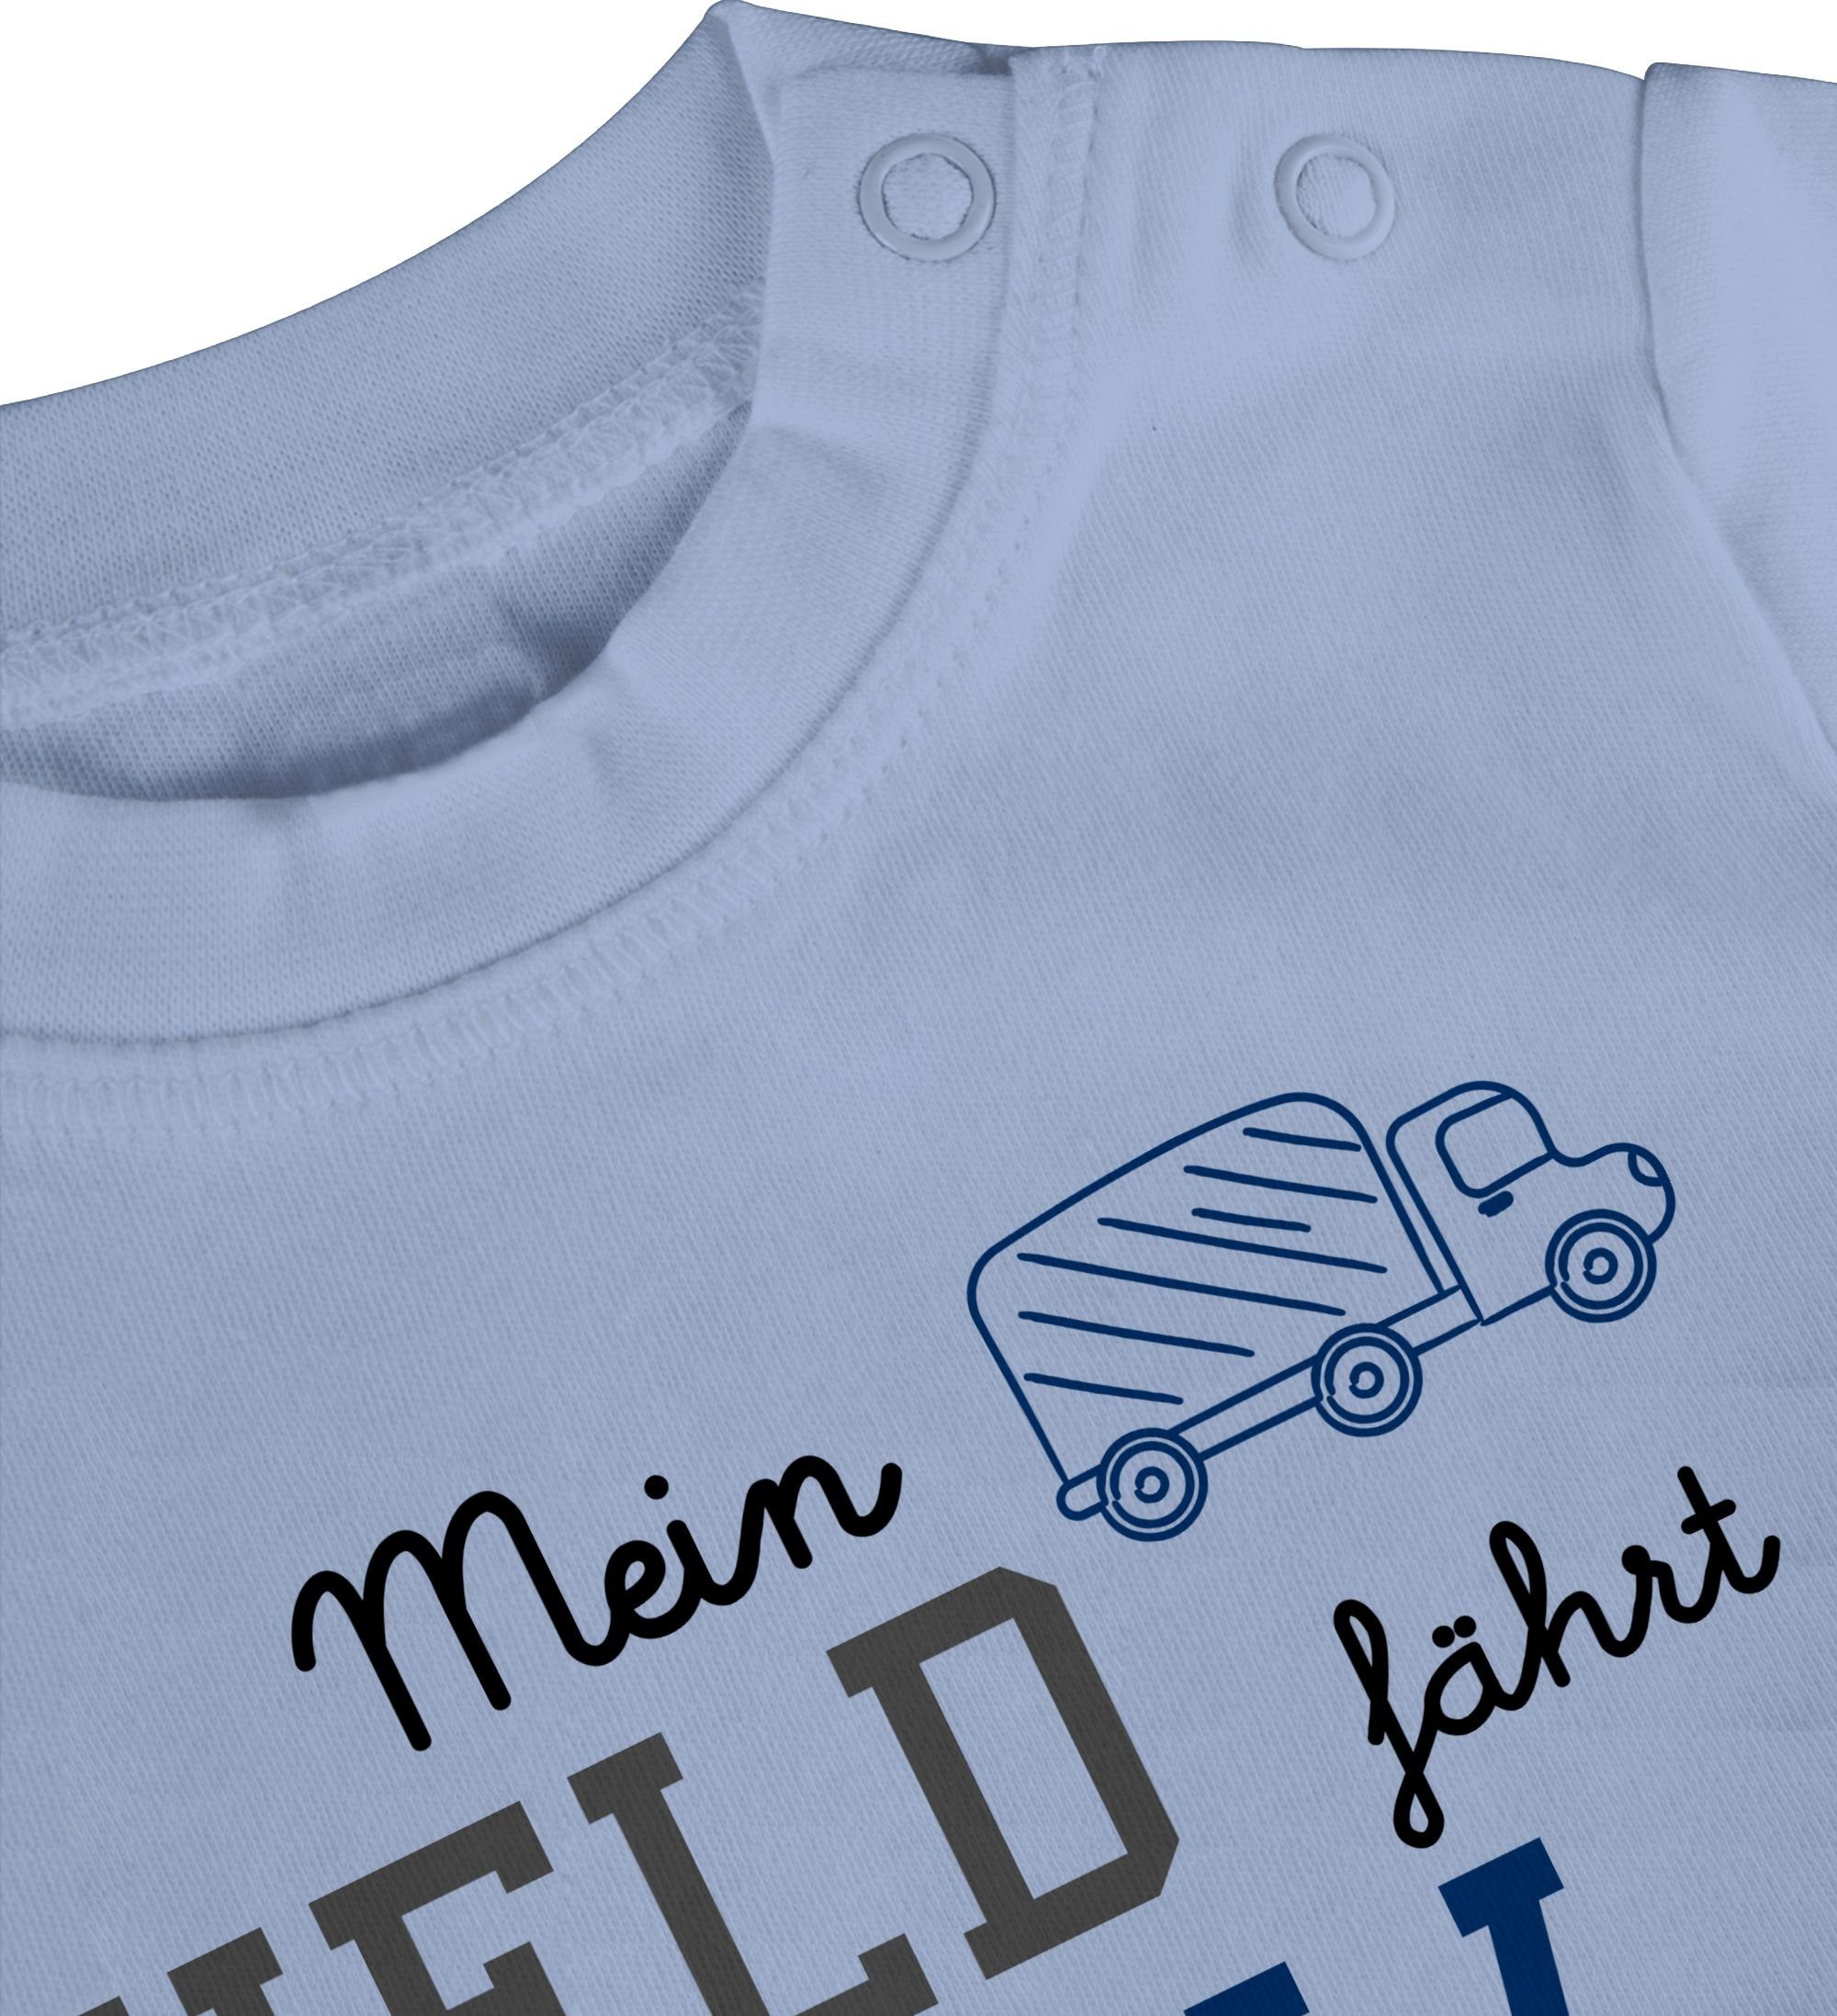 Held Mein Sprüche fährt Babyblau LKW T-Shirt Shirtracer Baby 1